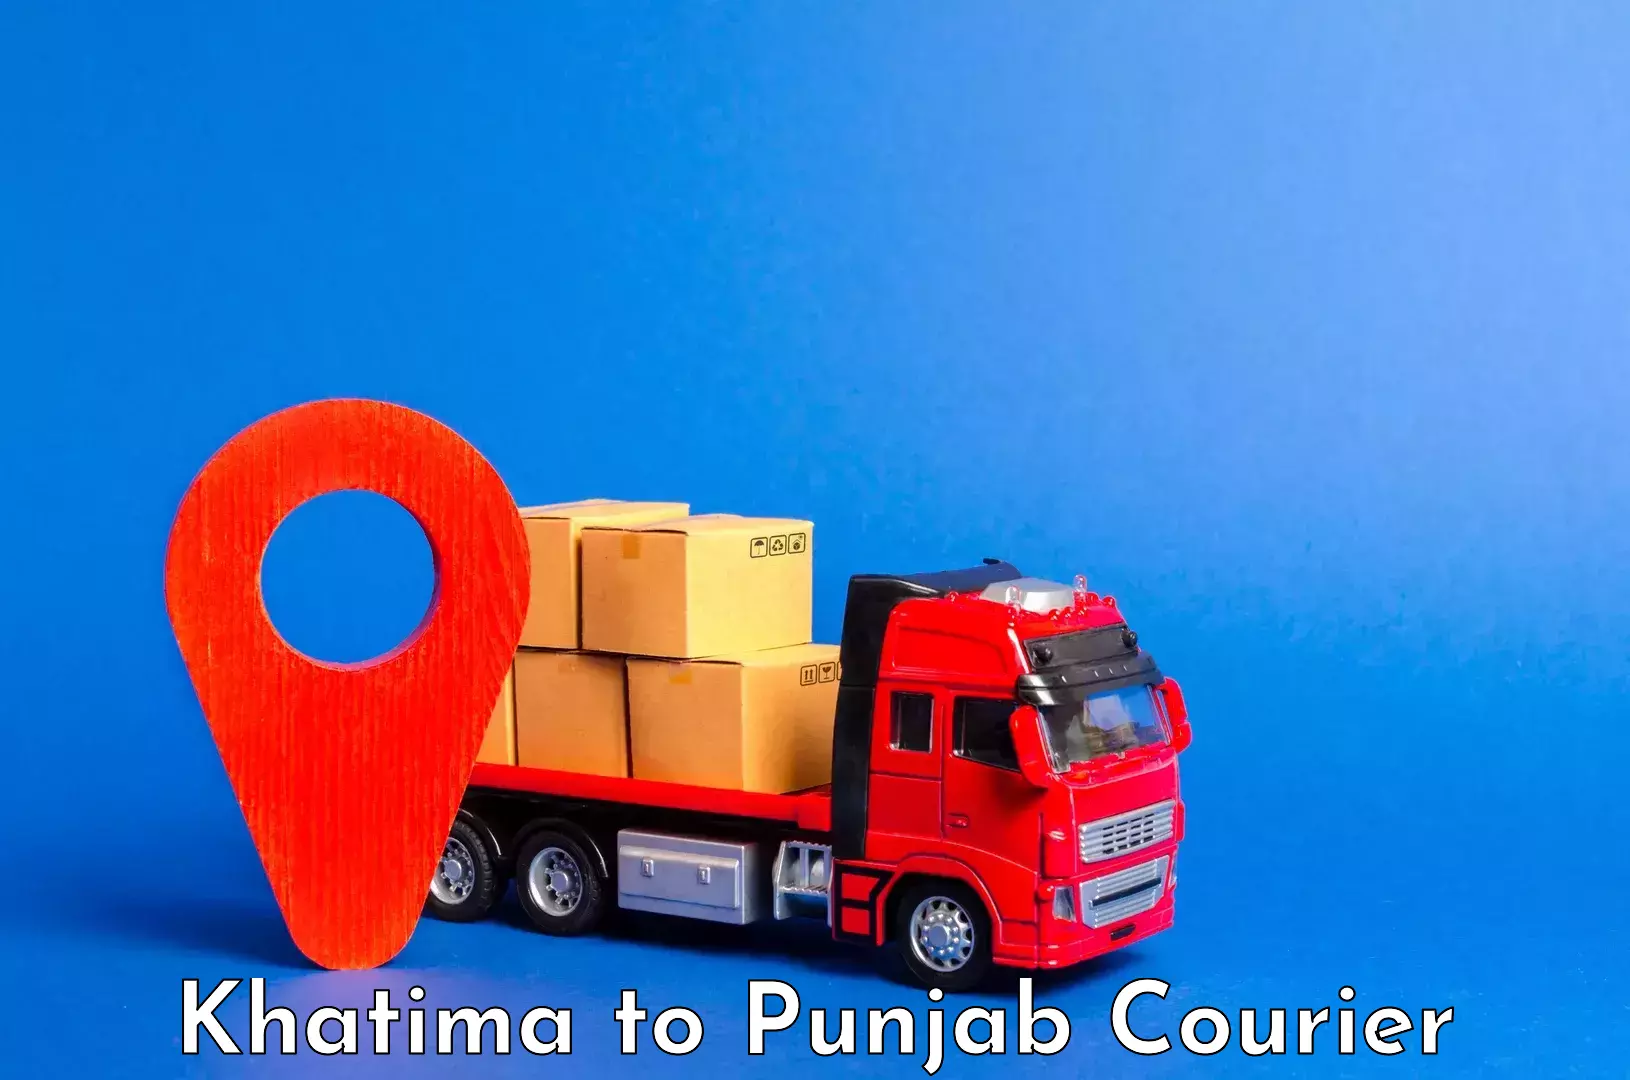 Luggage transport consulting Khatima to Punjab